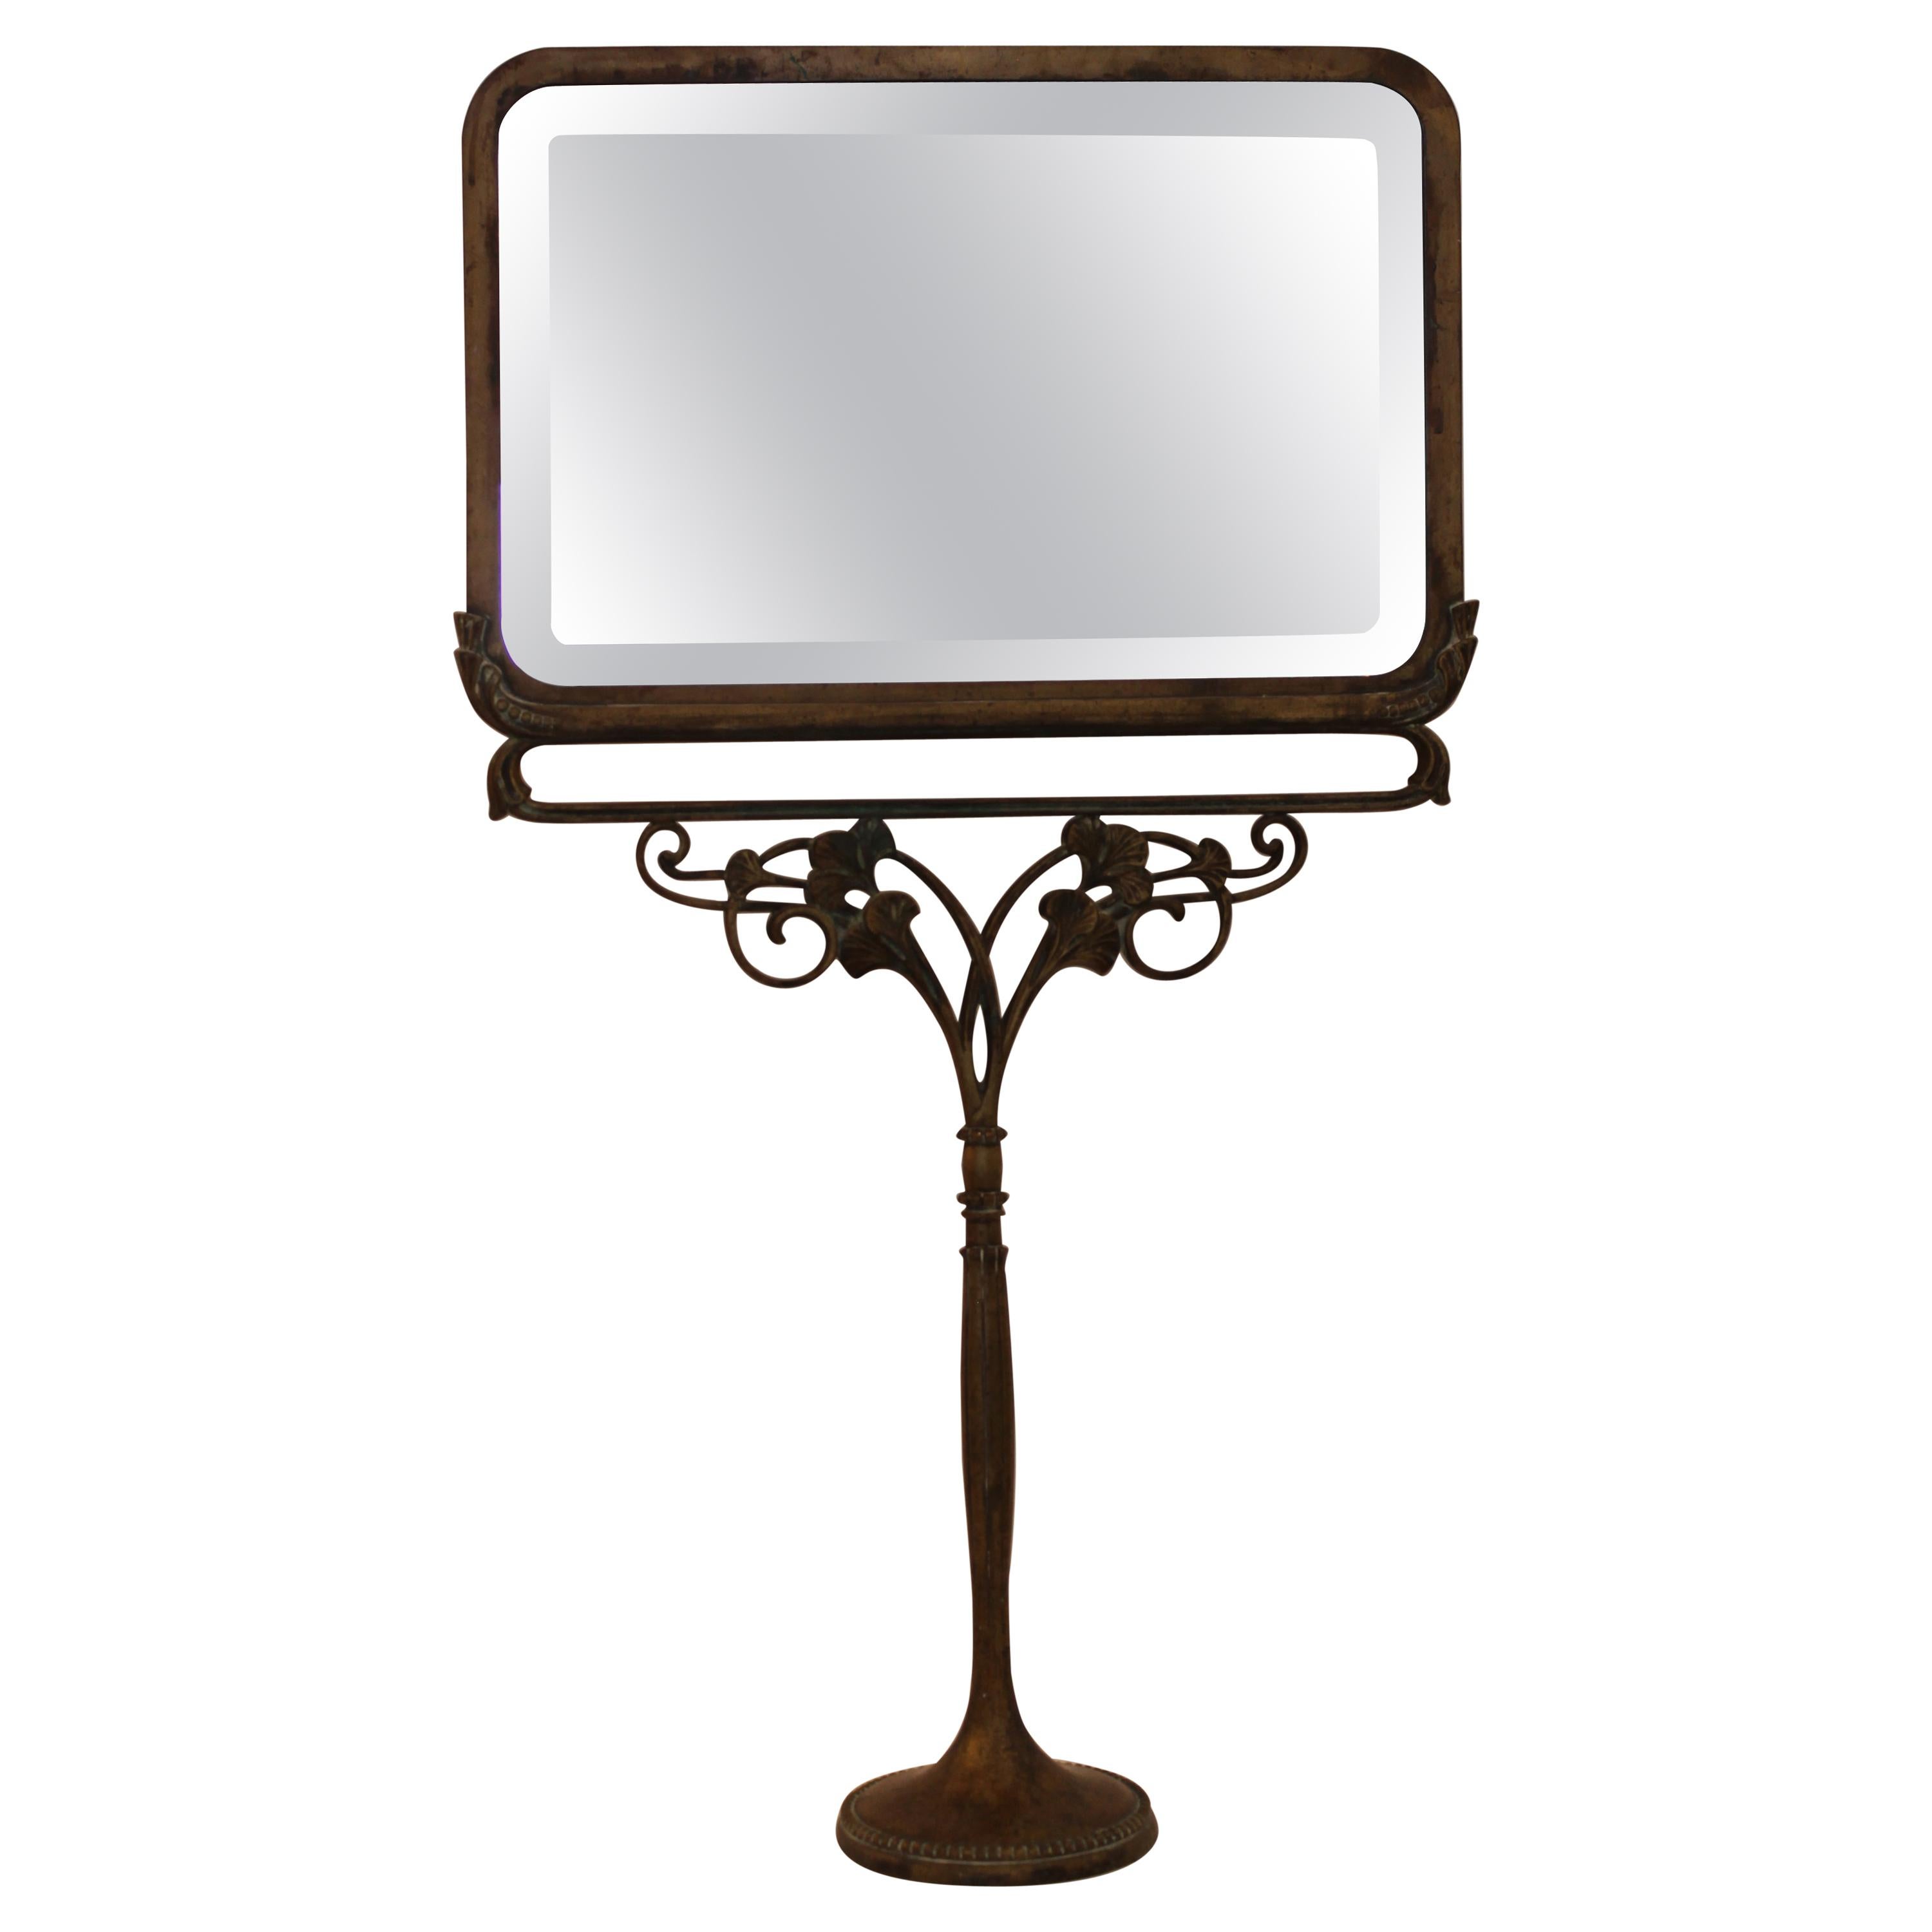 Art Nouveau Bronze Standing Mirror, Villiers & Picart Co. Paris